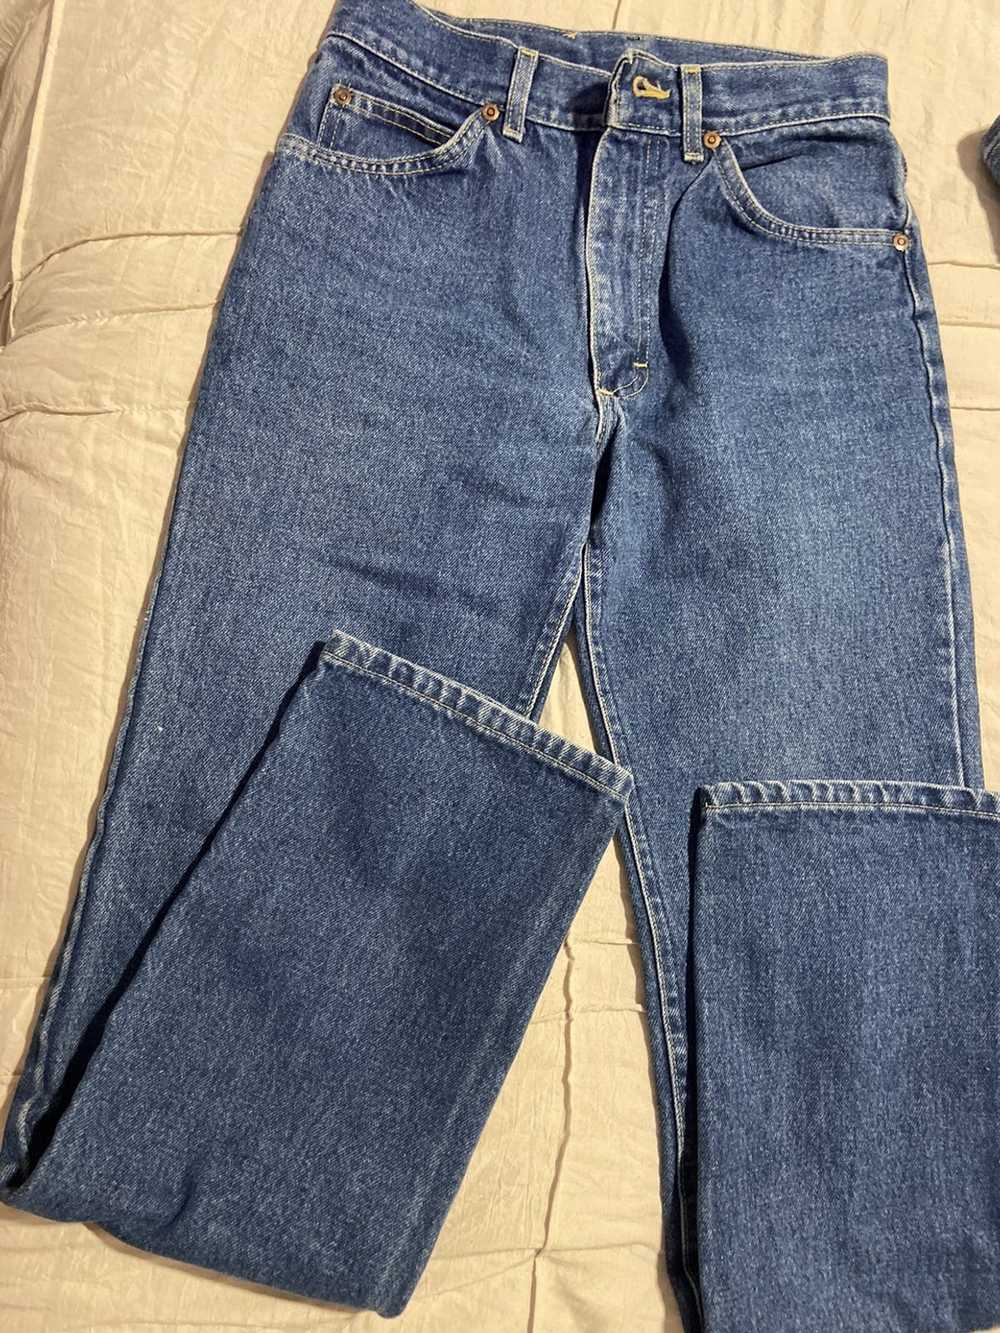 Lee Vintage Lee Jeans Blue Denim - image 5